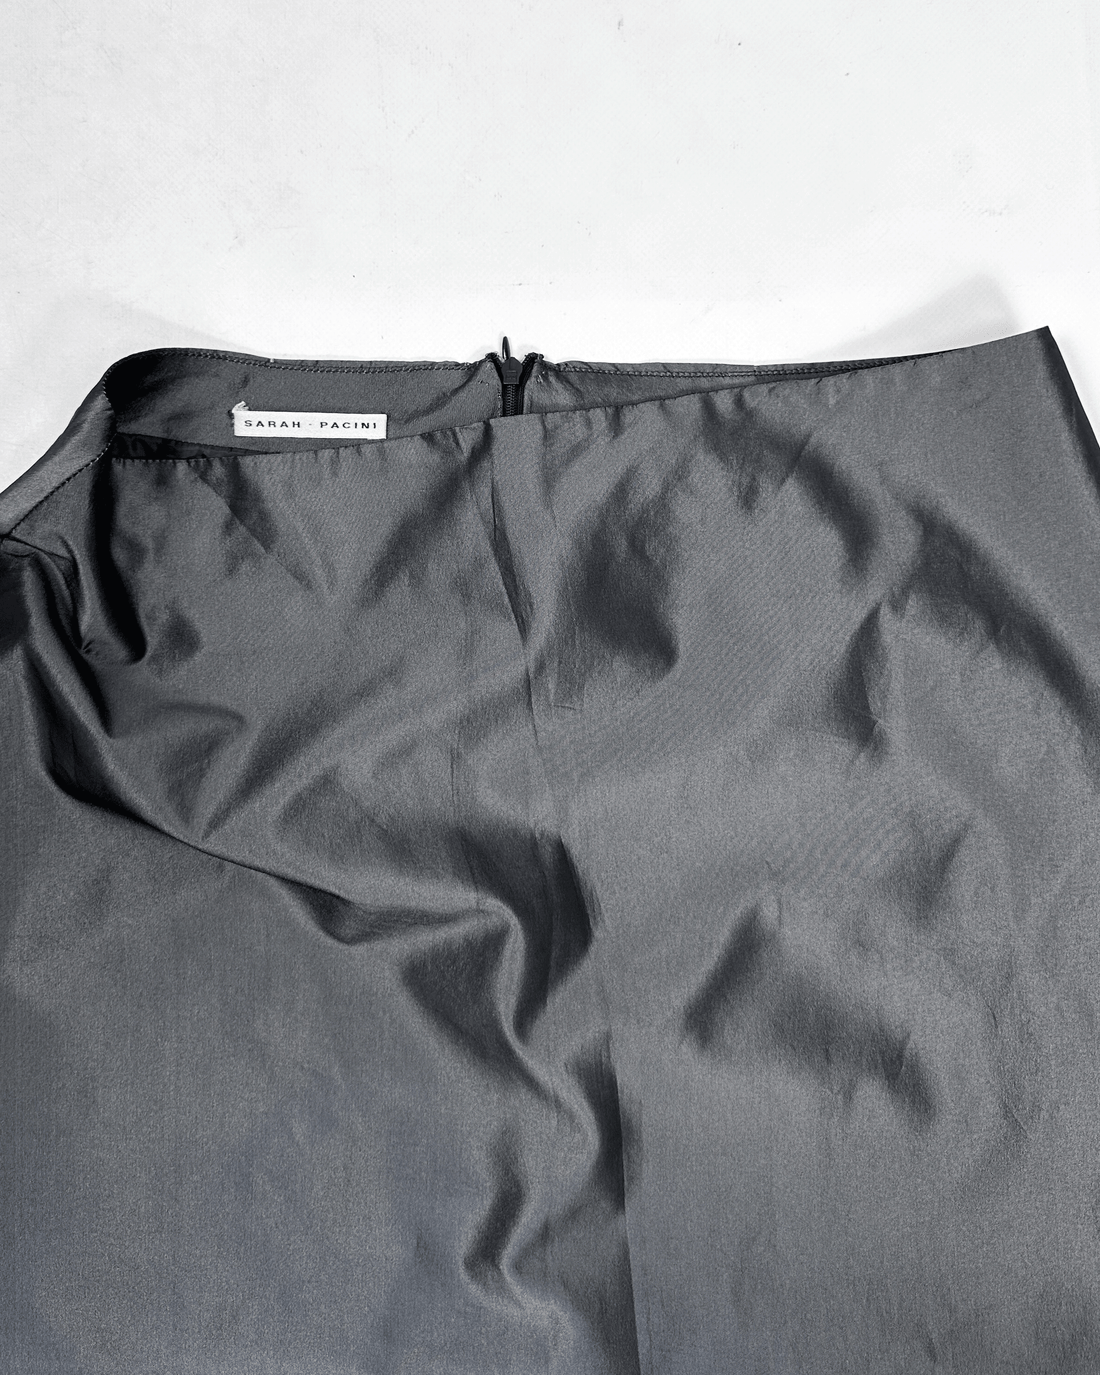 Sarah Pacini Metallic Grey Maxi Skirt 2000's